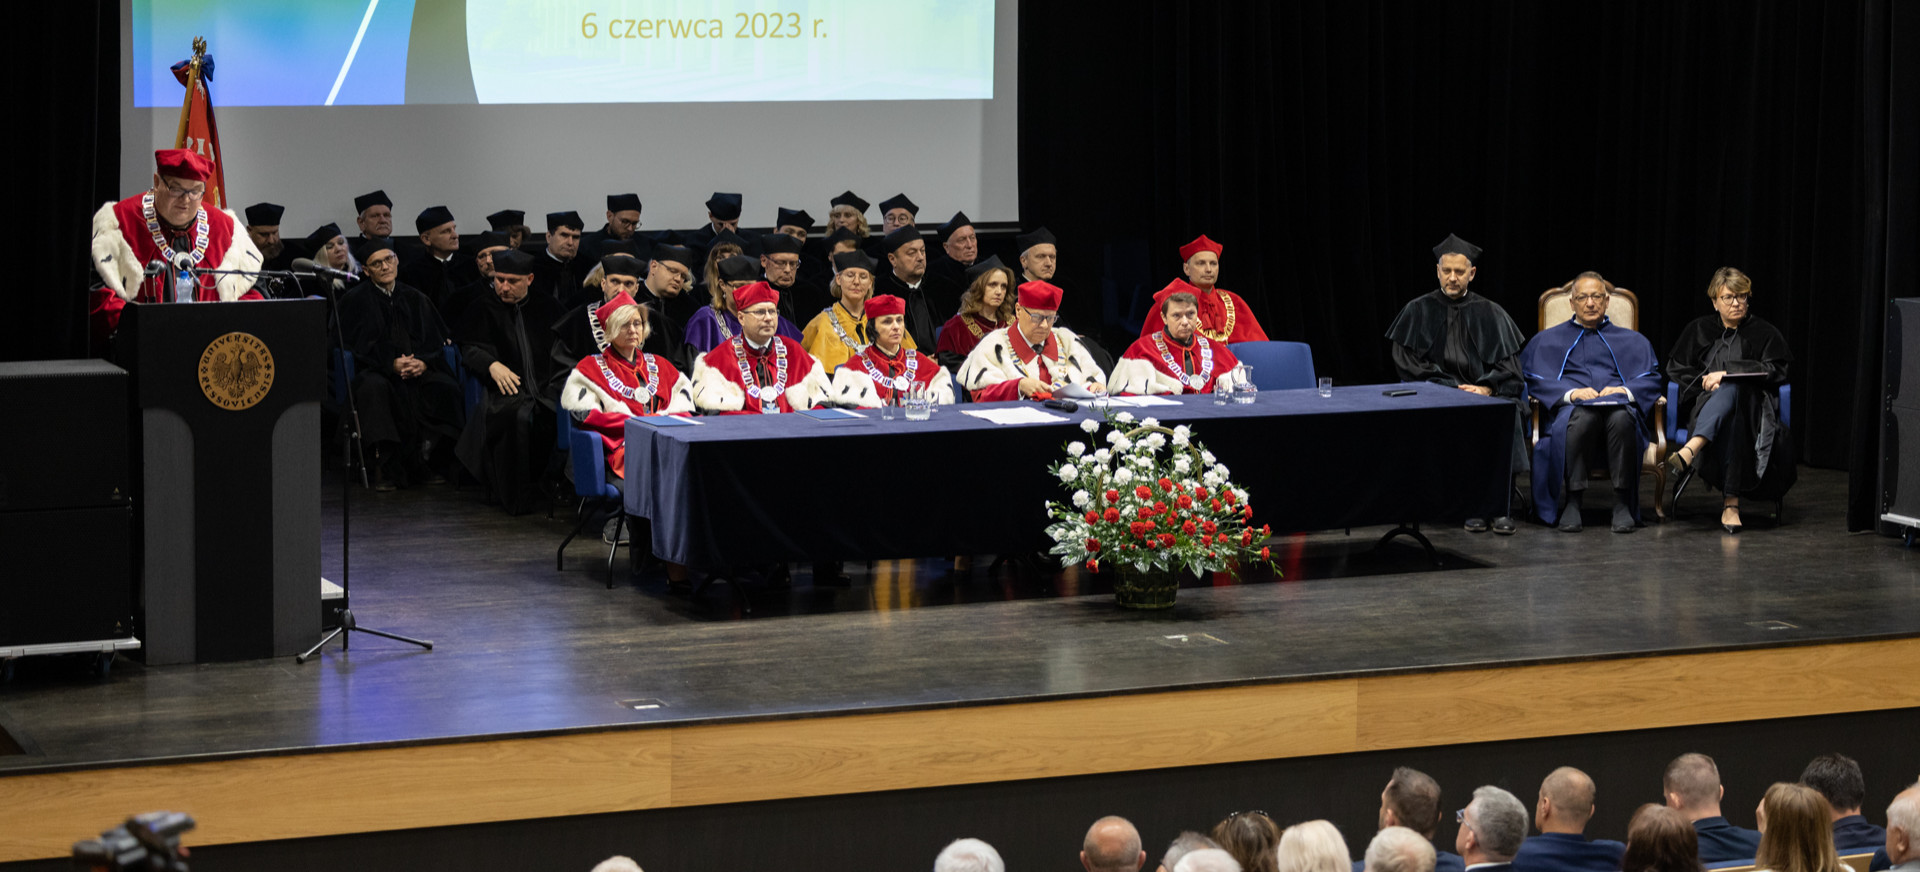 RZESZÓW. Święto Uniwersytetu Rzeszowskiego połączone z nadaniem godności honoris causa